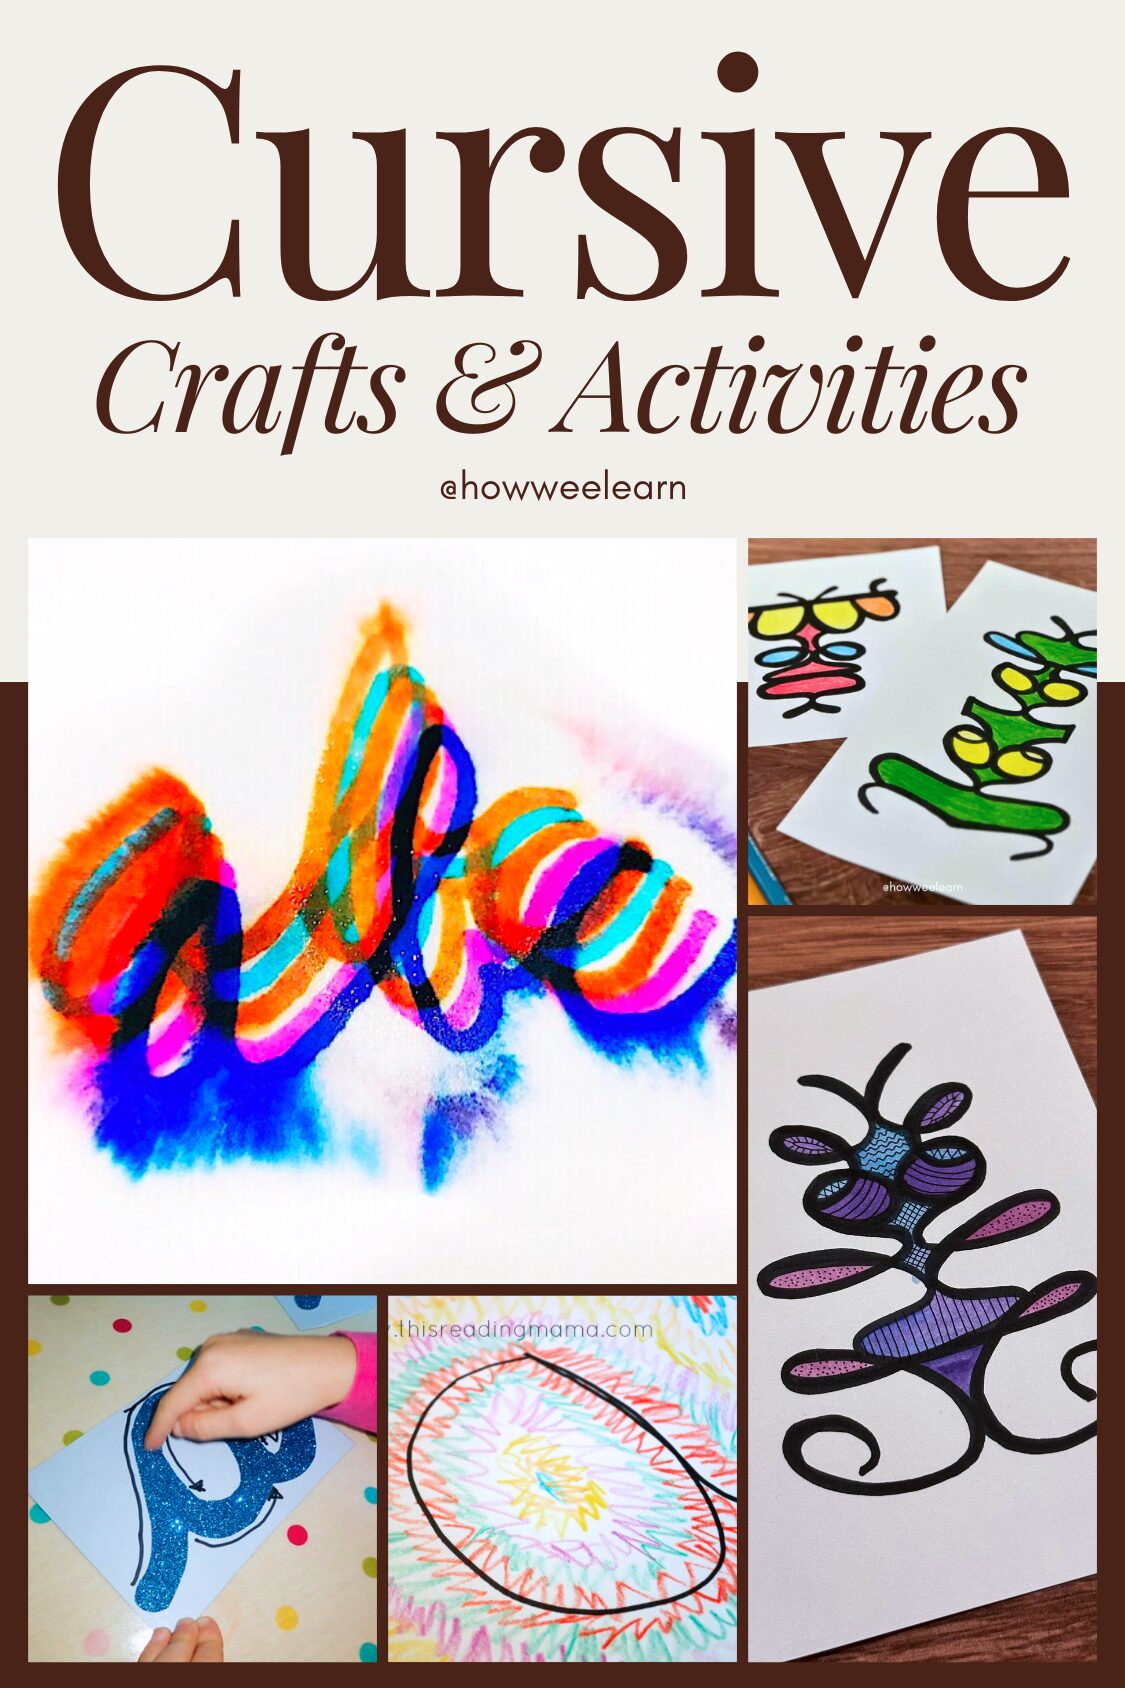 Cursive Writing Crafts & Activities